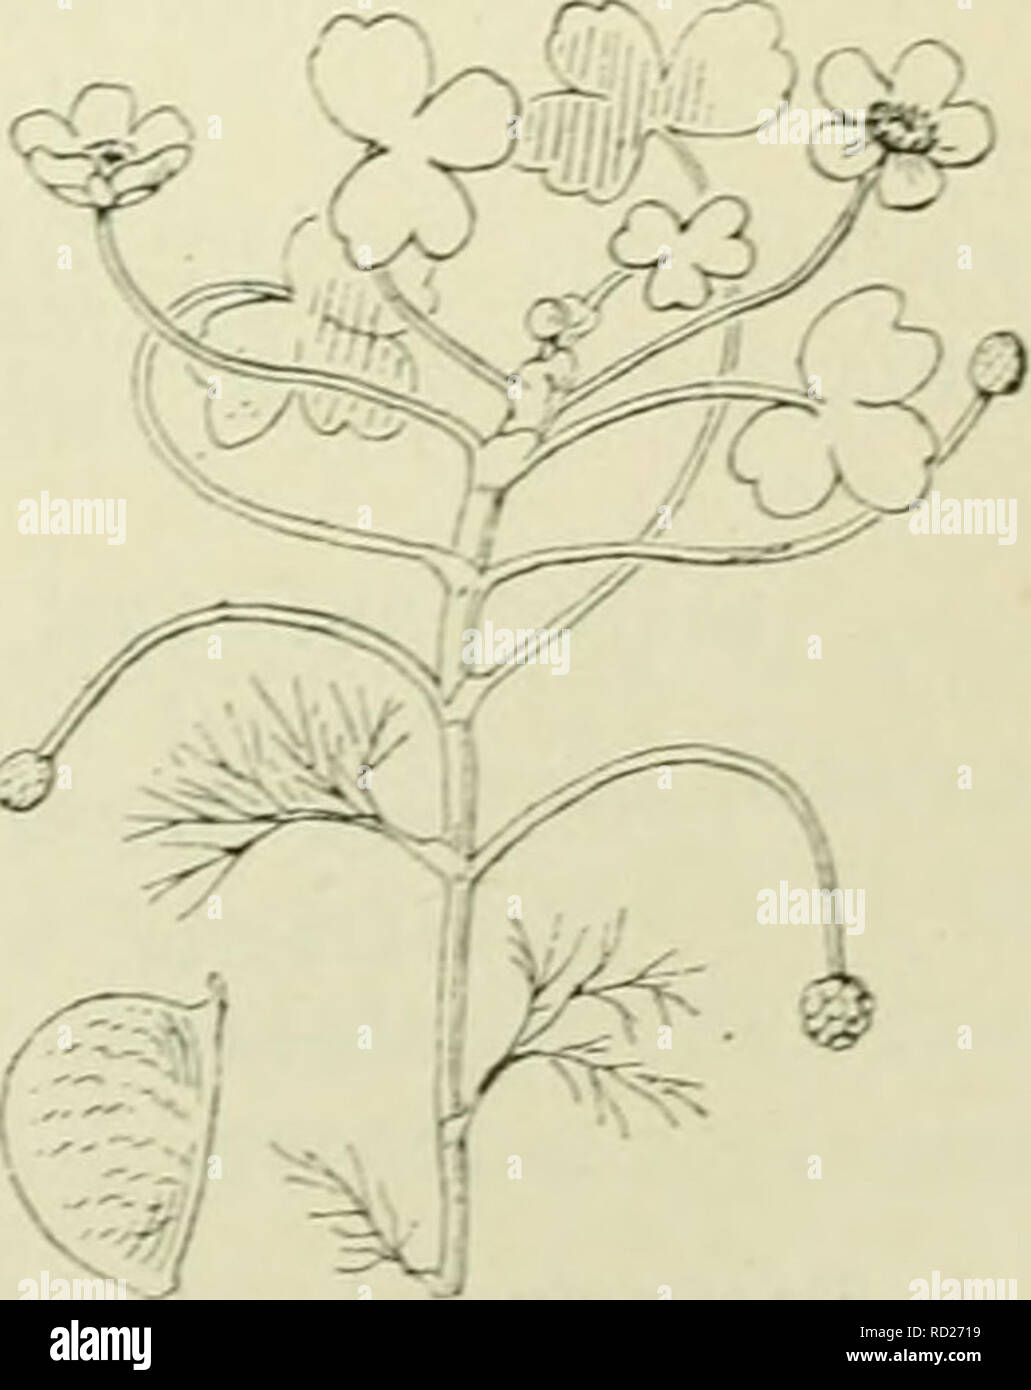 . De flora van Nederland. Plants. i 3] Batrachium trichophyllum Fig. 234. is half. Batrachium heterophyllum Fig. 235. ') tripartitum = driedeeli.y. -) salinum = zoutminnend. ') aquatile = in of langs water groeiend. ') lieterophyllum = verschillendbiadig. ^) trichophyllum â haar- bladig. 'â ) het verkleinwoord van rana: kikvorsch dus kikvorschje. en slaat op het groeien van vele soorten bij het water, soms zelfs ten deele er in.. Please note that these images are extracted from scanned page images that may have been digitally enhanced for readability - coloration and appearance of these illust Stock Photo